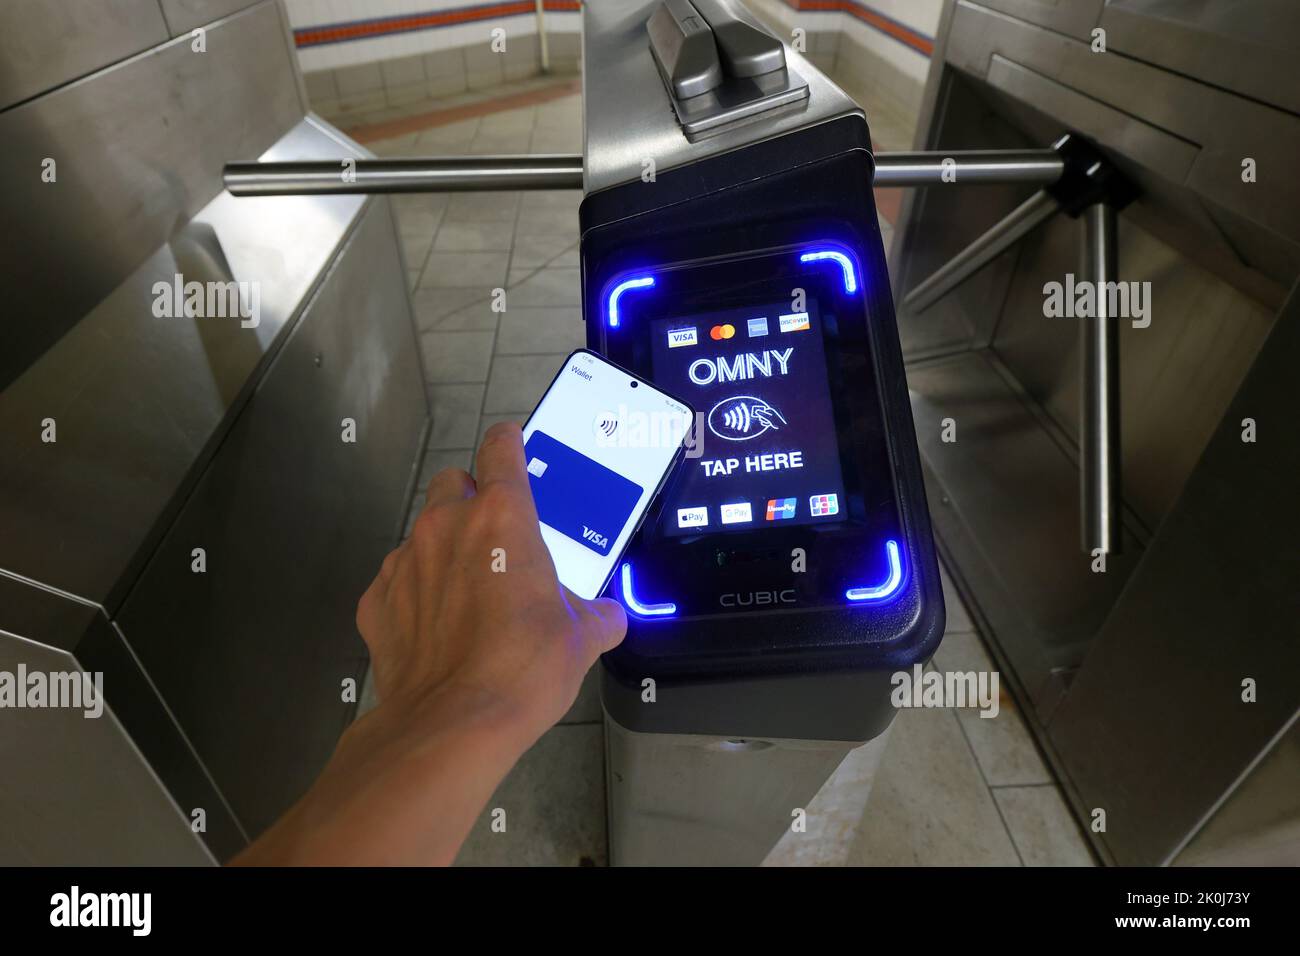 Un smartphone con Google Wallet toca un torniquete de metro de Nueva York equipado con un lector de pagos sin contacto OMNY que acepta pagos NFC Foto de stock